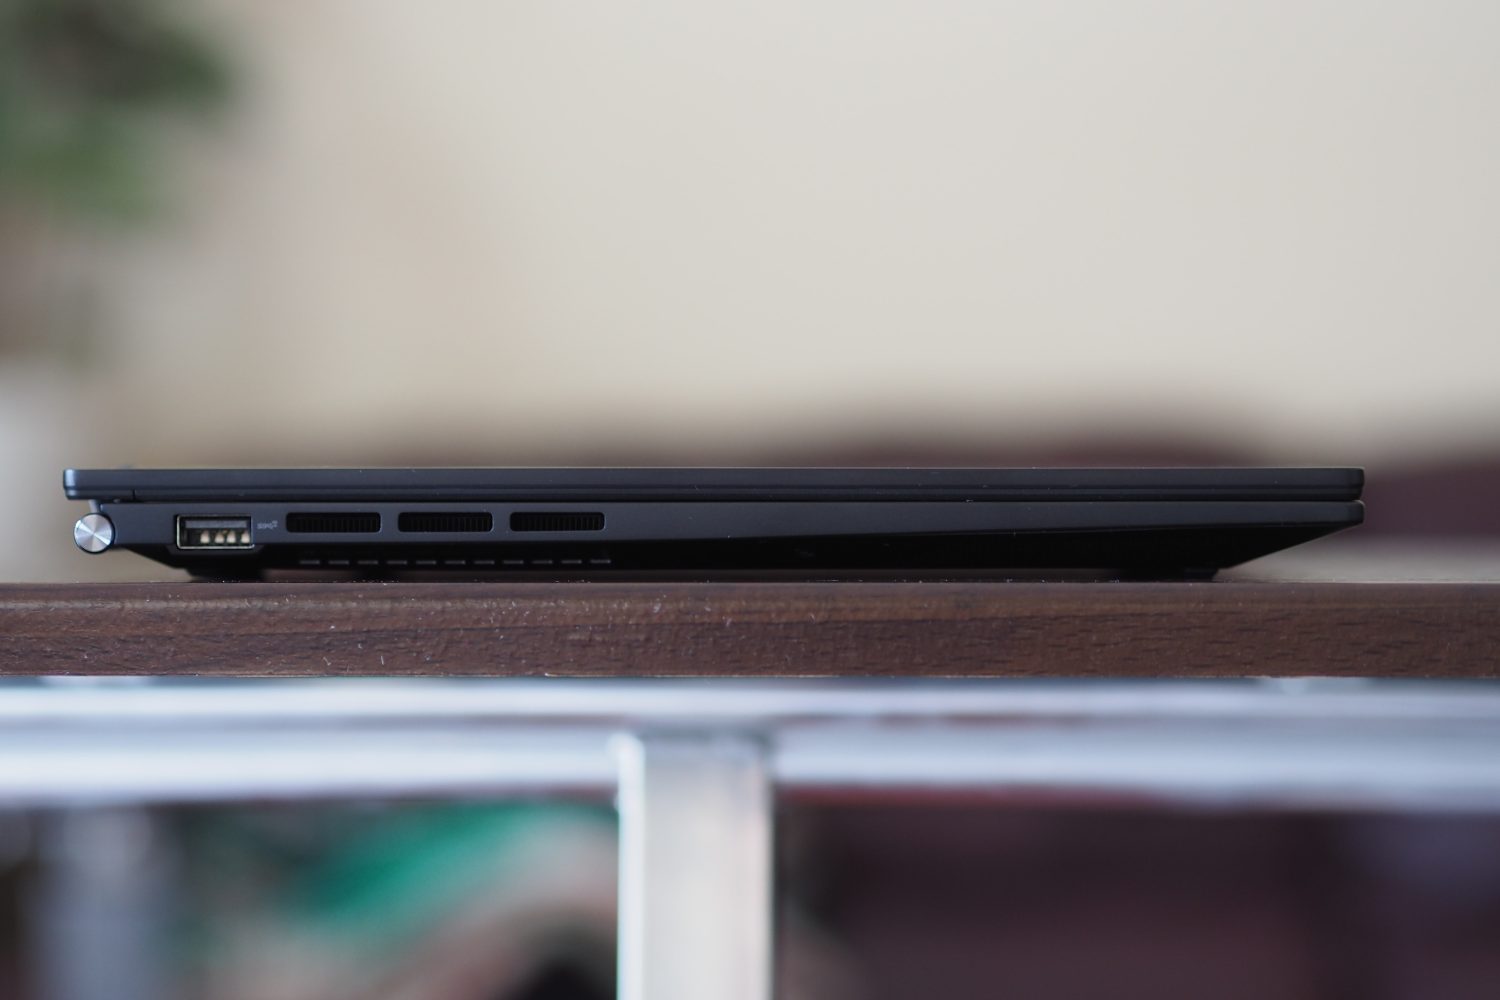 Vista do lado esquerdo do Asus Zenbook 14 OLED mostrando as portas.